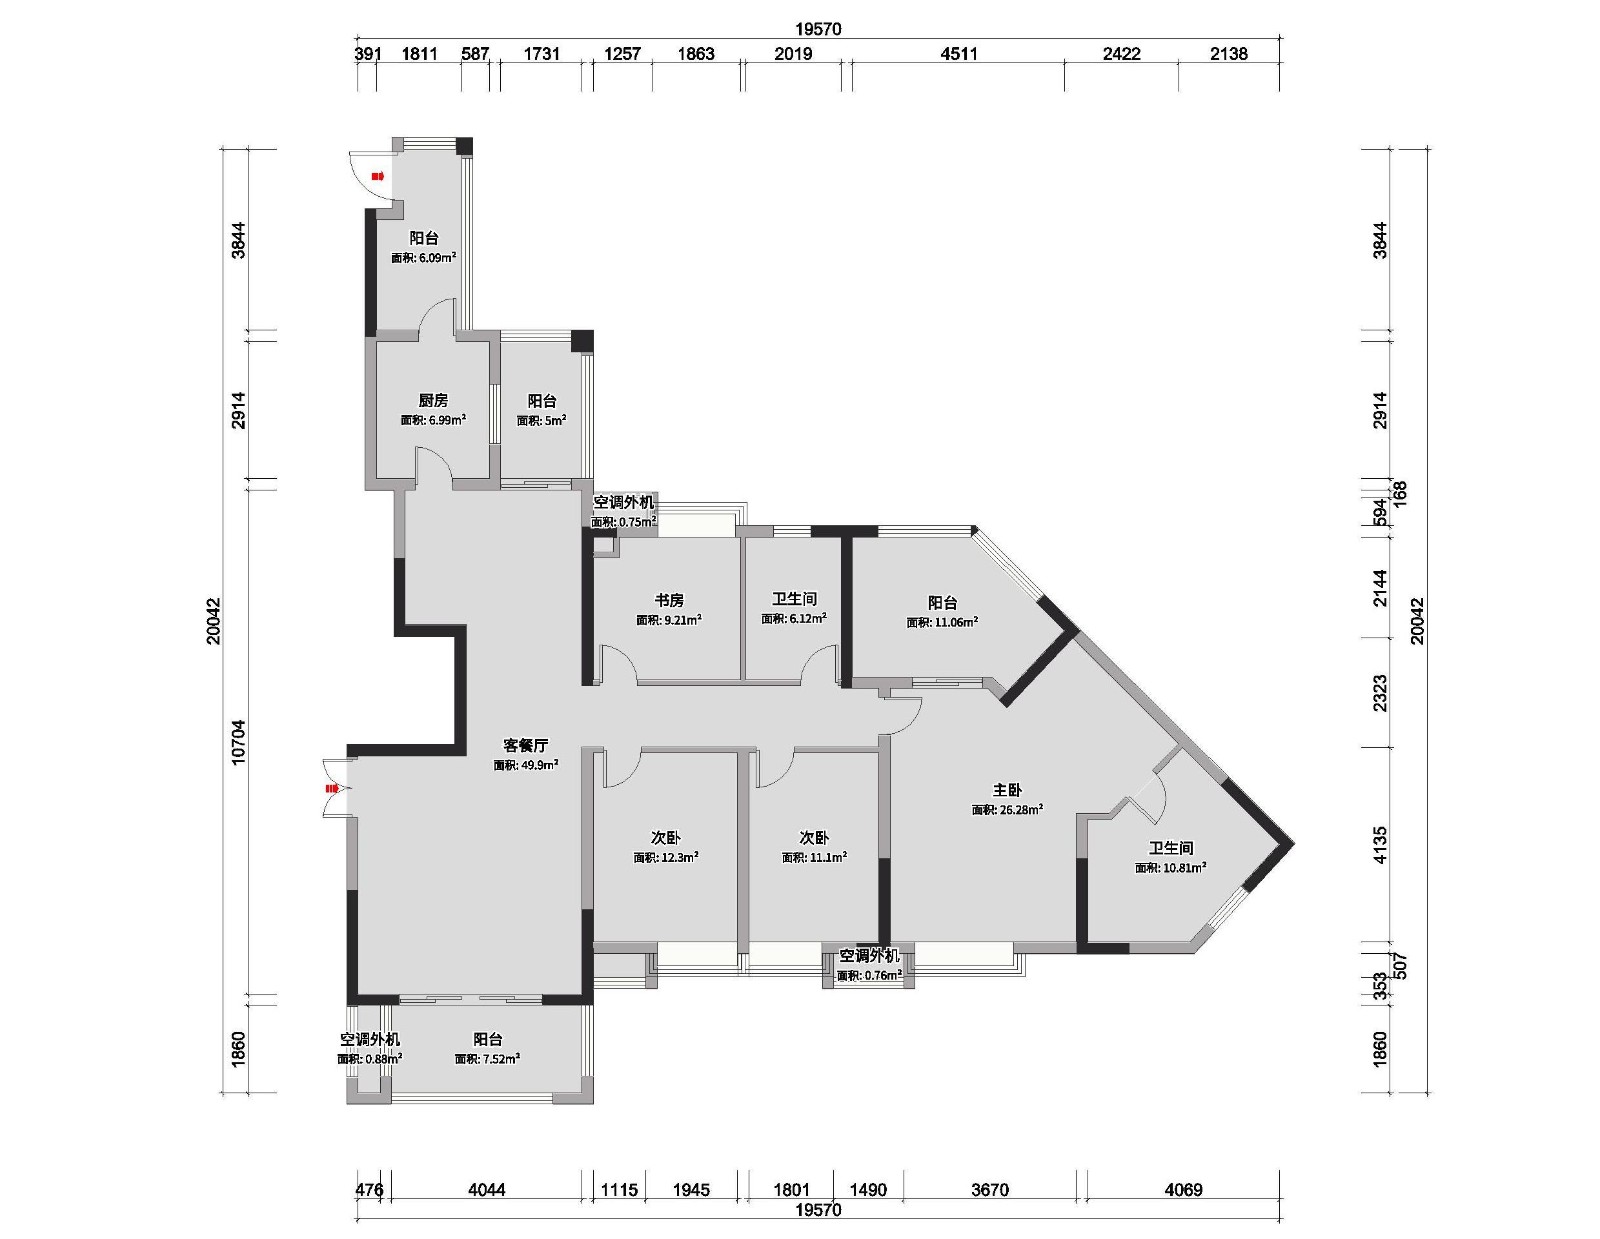 98现代三房装修效果图,现代轻奢三室两厅装修案例效果图-美广网(图1)